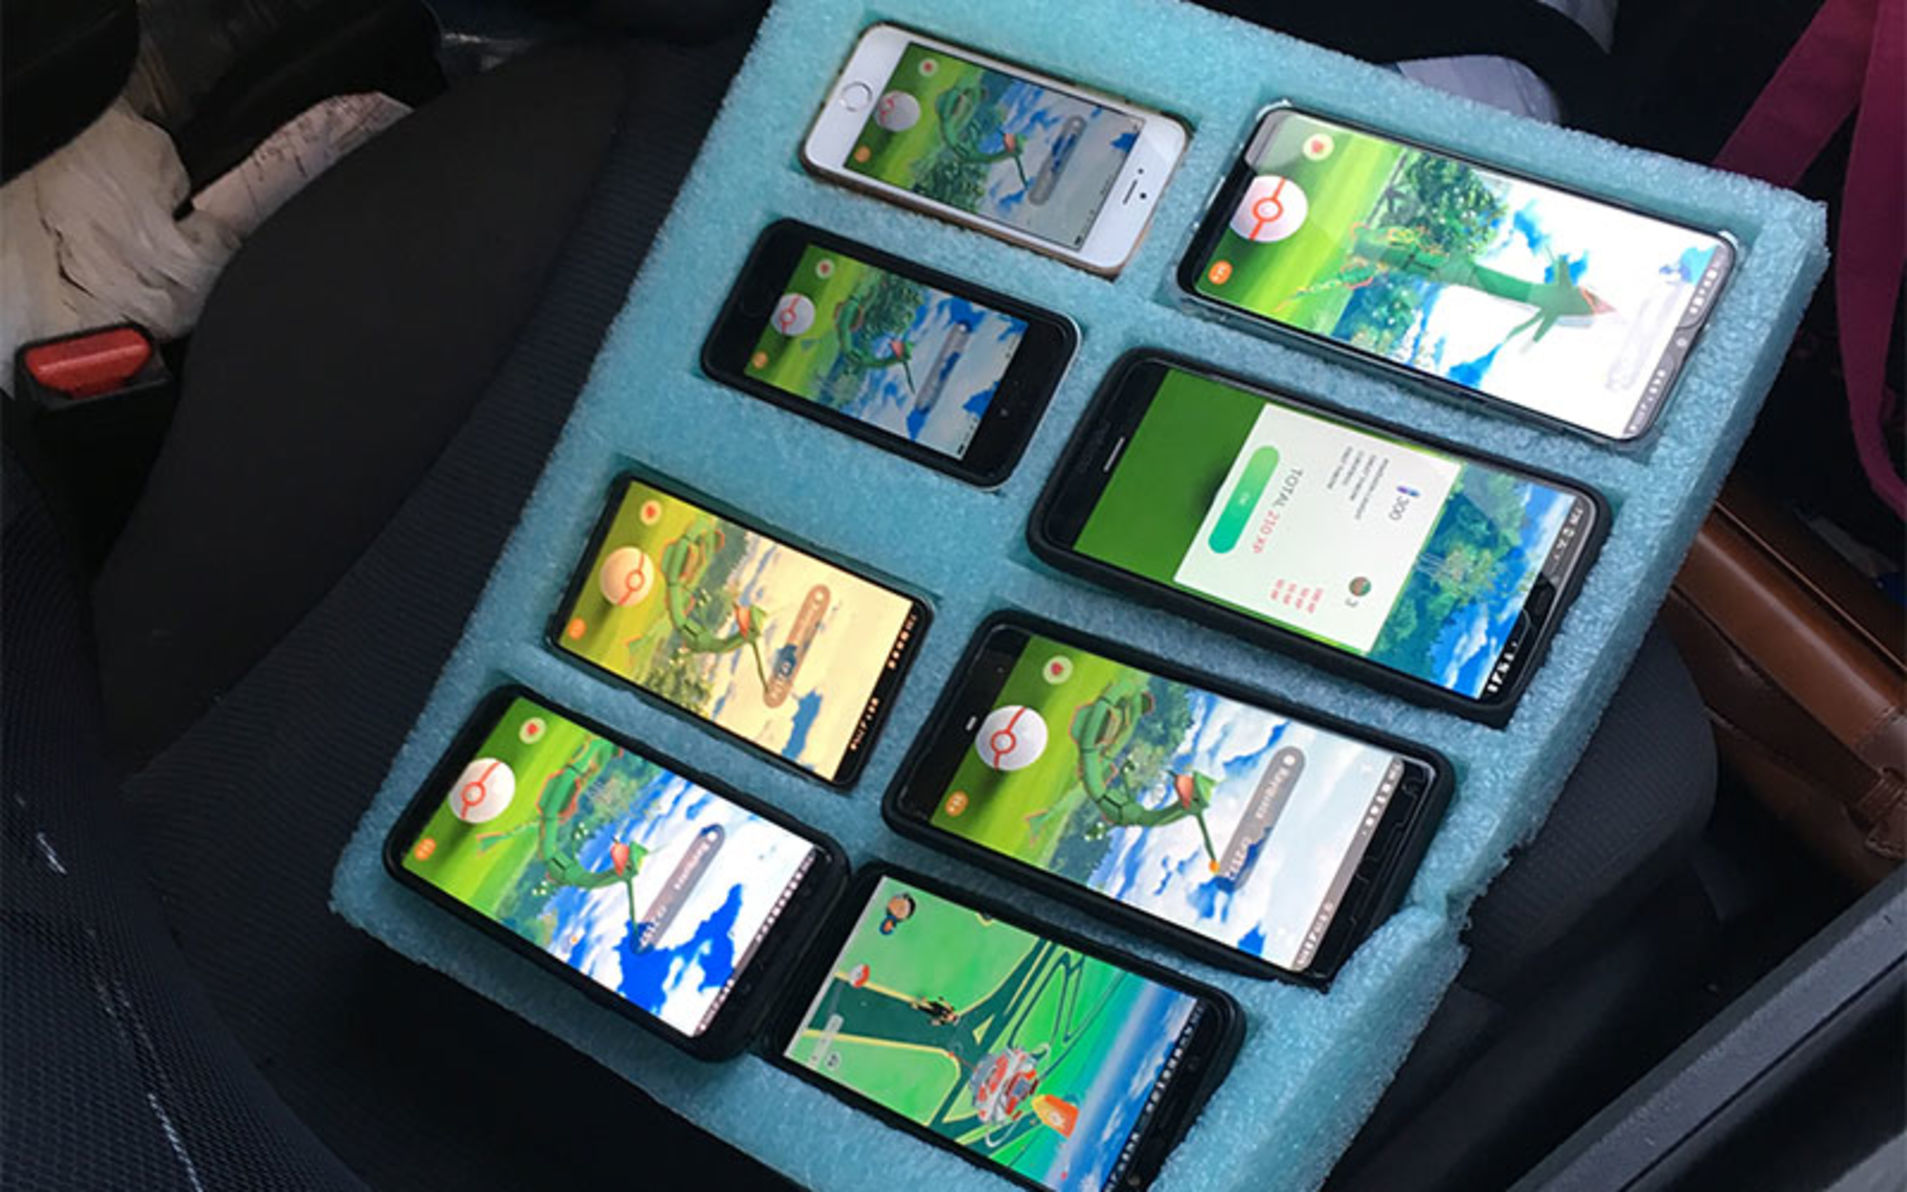 Ничего необычного, просто американец играет в Pokémon Go на восьми смартфонах за рулем